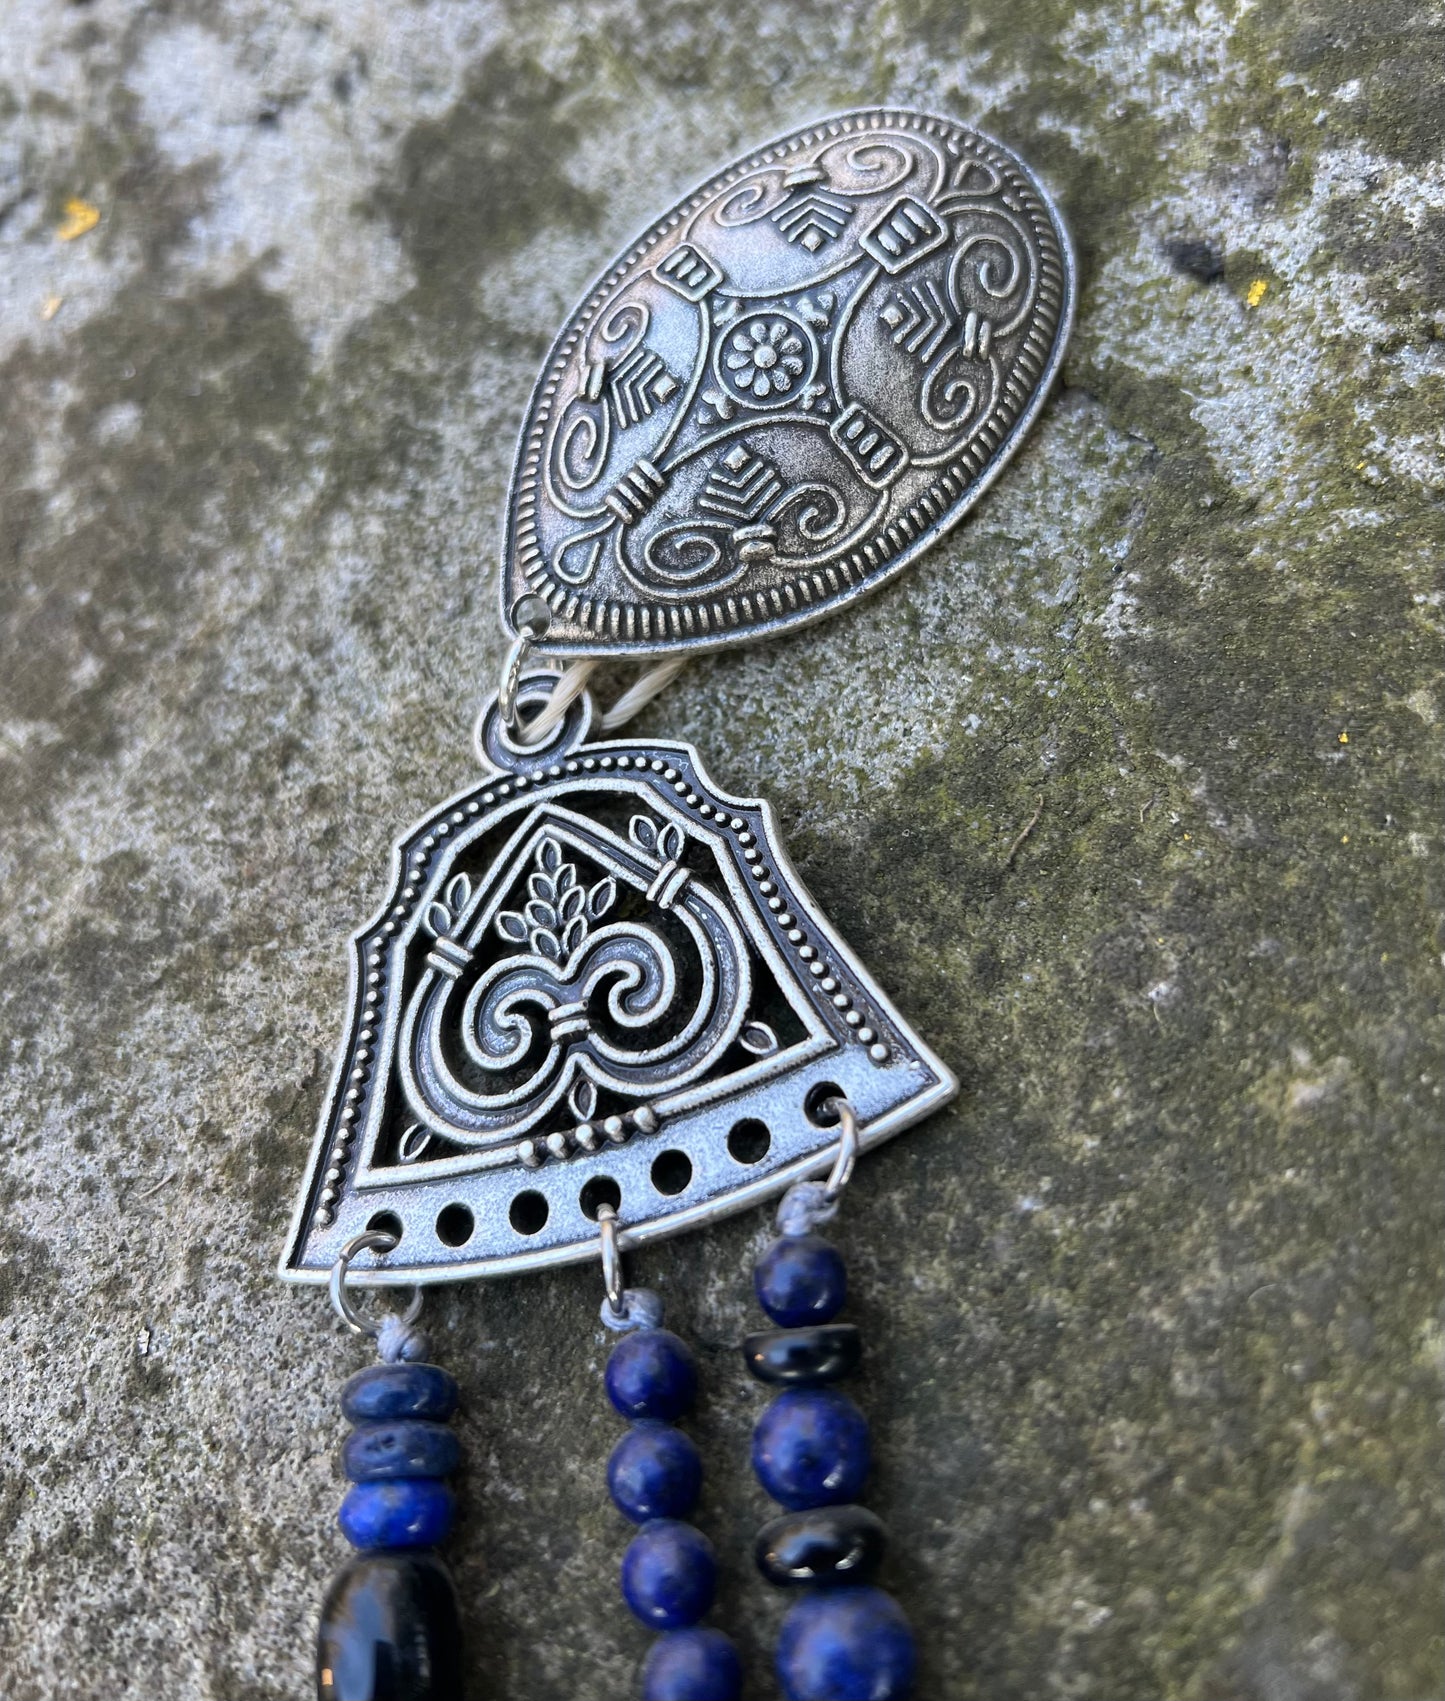 Collier / Ornement surcot Viking - Broche tortue - Lapis lazuli - Perle céramique bleue - Lune Slave